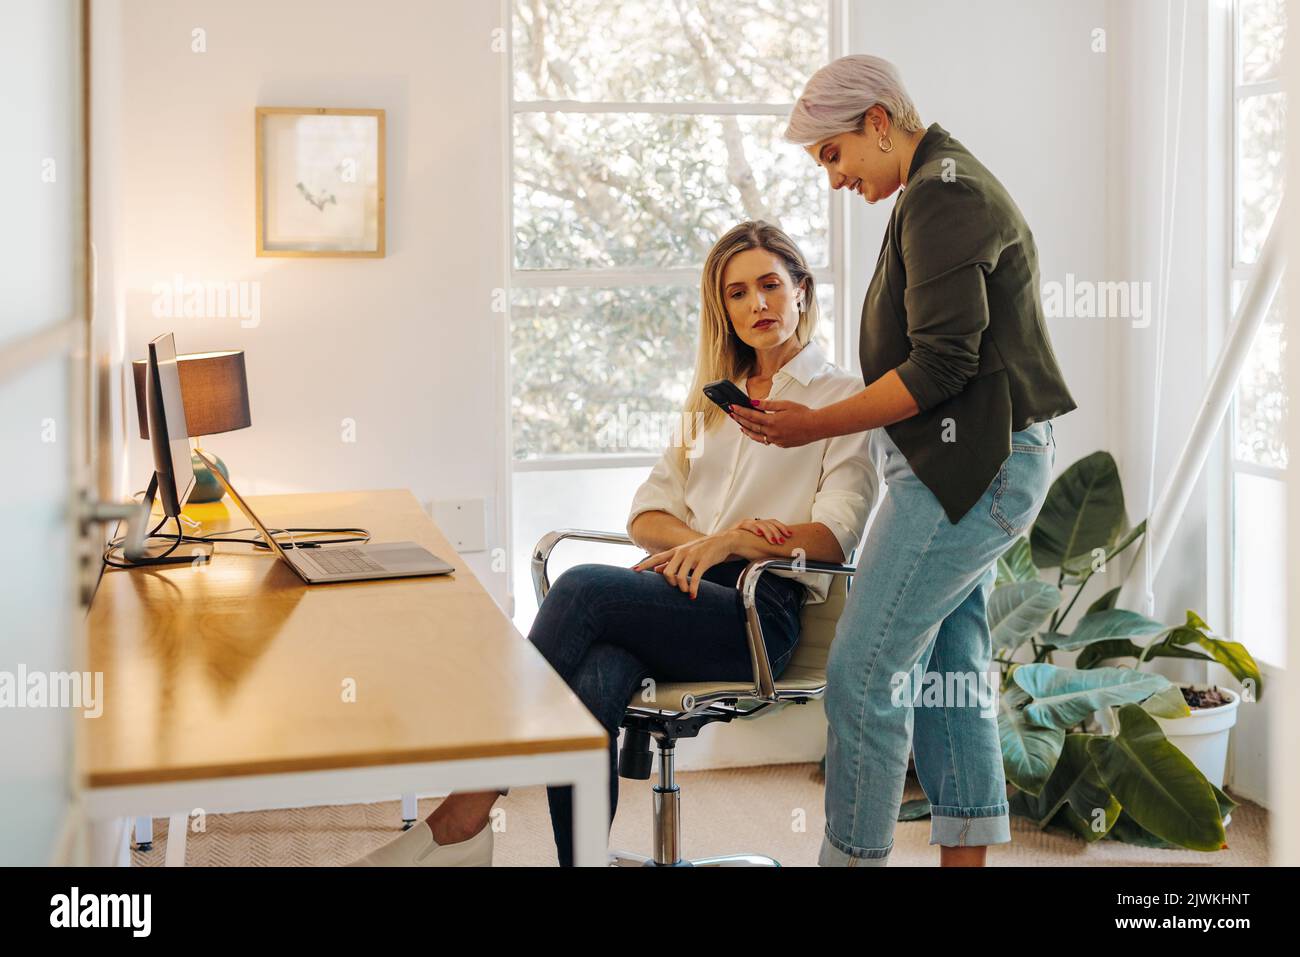 Junge Geschäftsfrau zeigt ihrem Kollegen in einem modernen Büro ihren Smartphone-Bildschirm. Zwei junge Geschäftsfrauen arbeiten in einer eigenen Frau an einer neuen Aufgabe zusammen Stockfoto